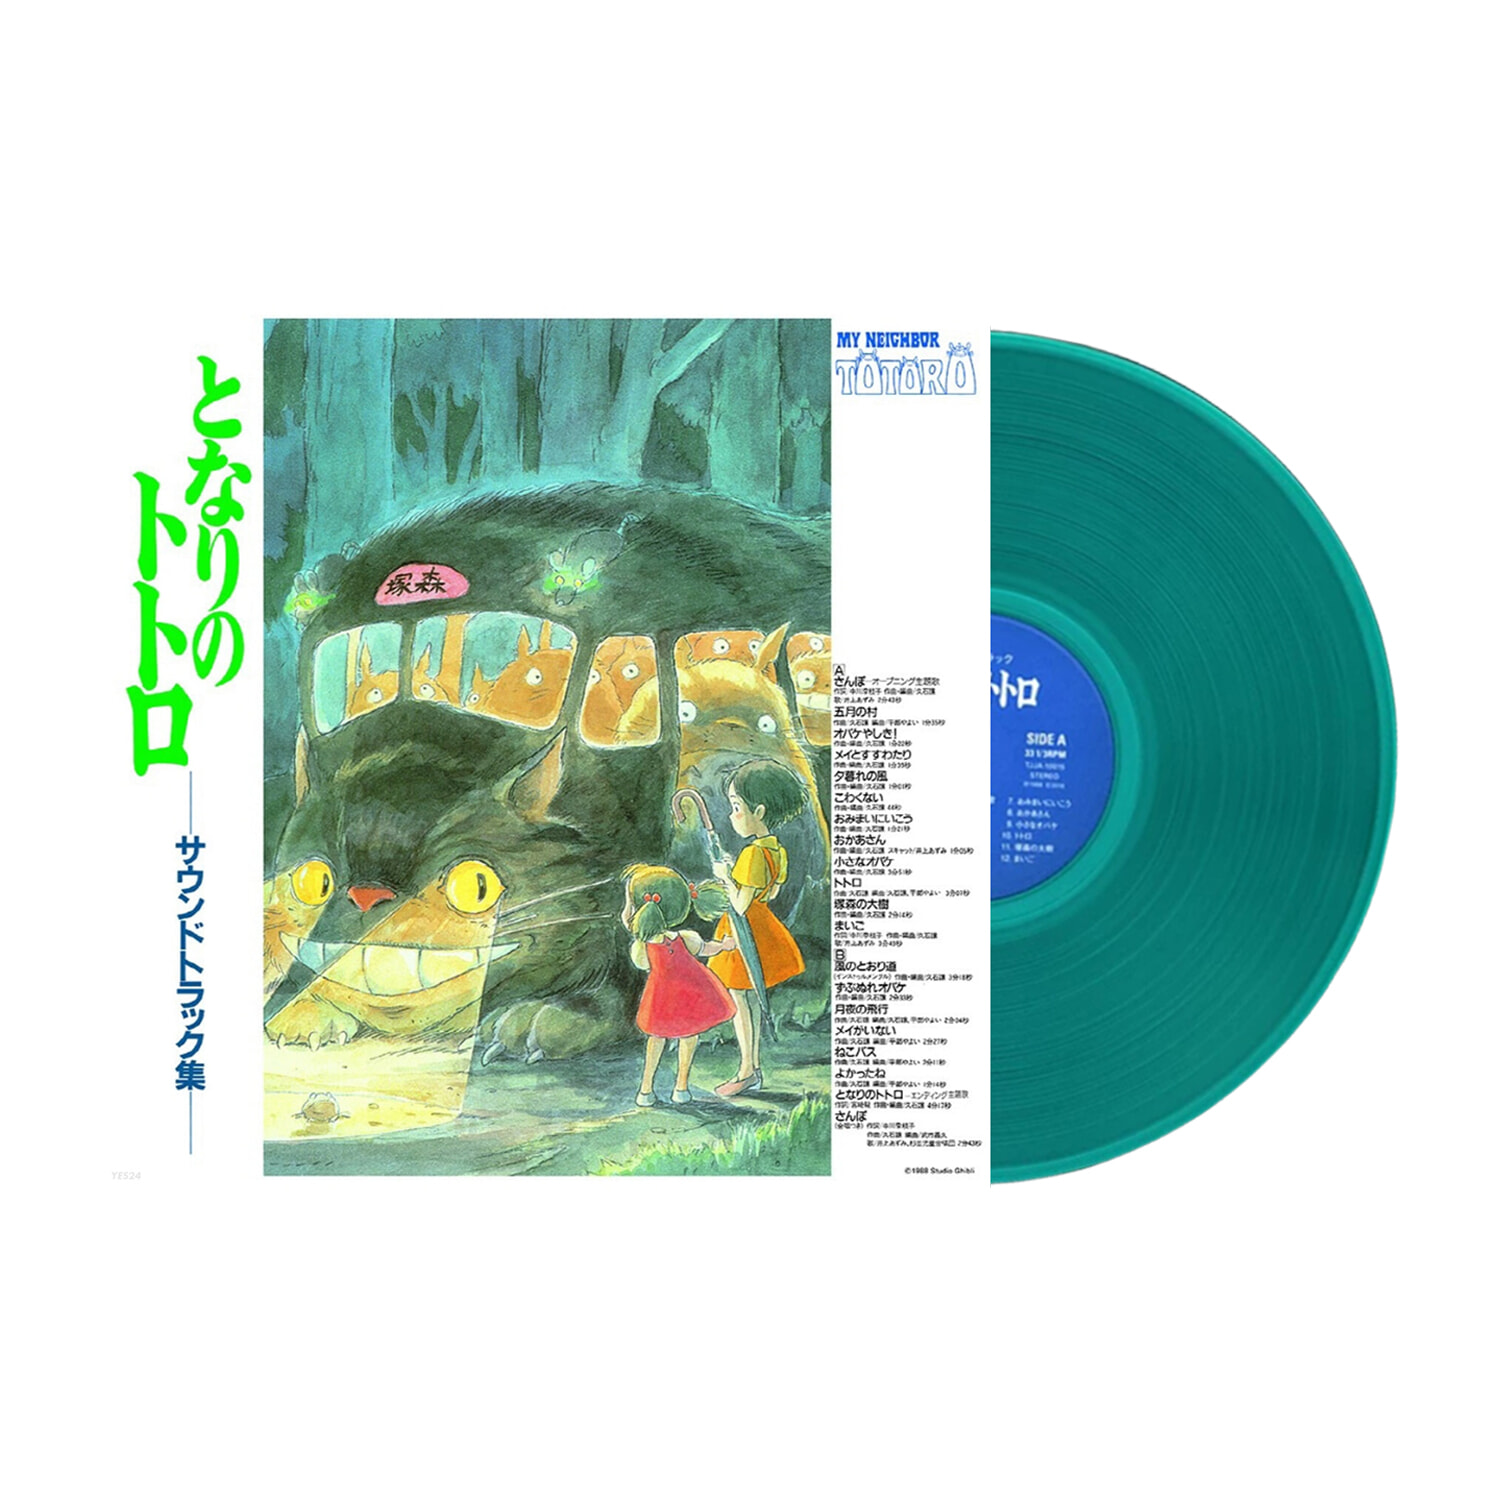 이웃의 토토로 영화음악 (My Neighbor Totoro OST by Hisaishi Joe) [투명 그린 컬러 LP] 